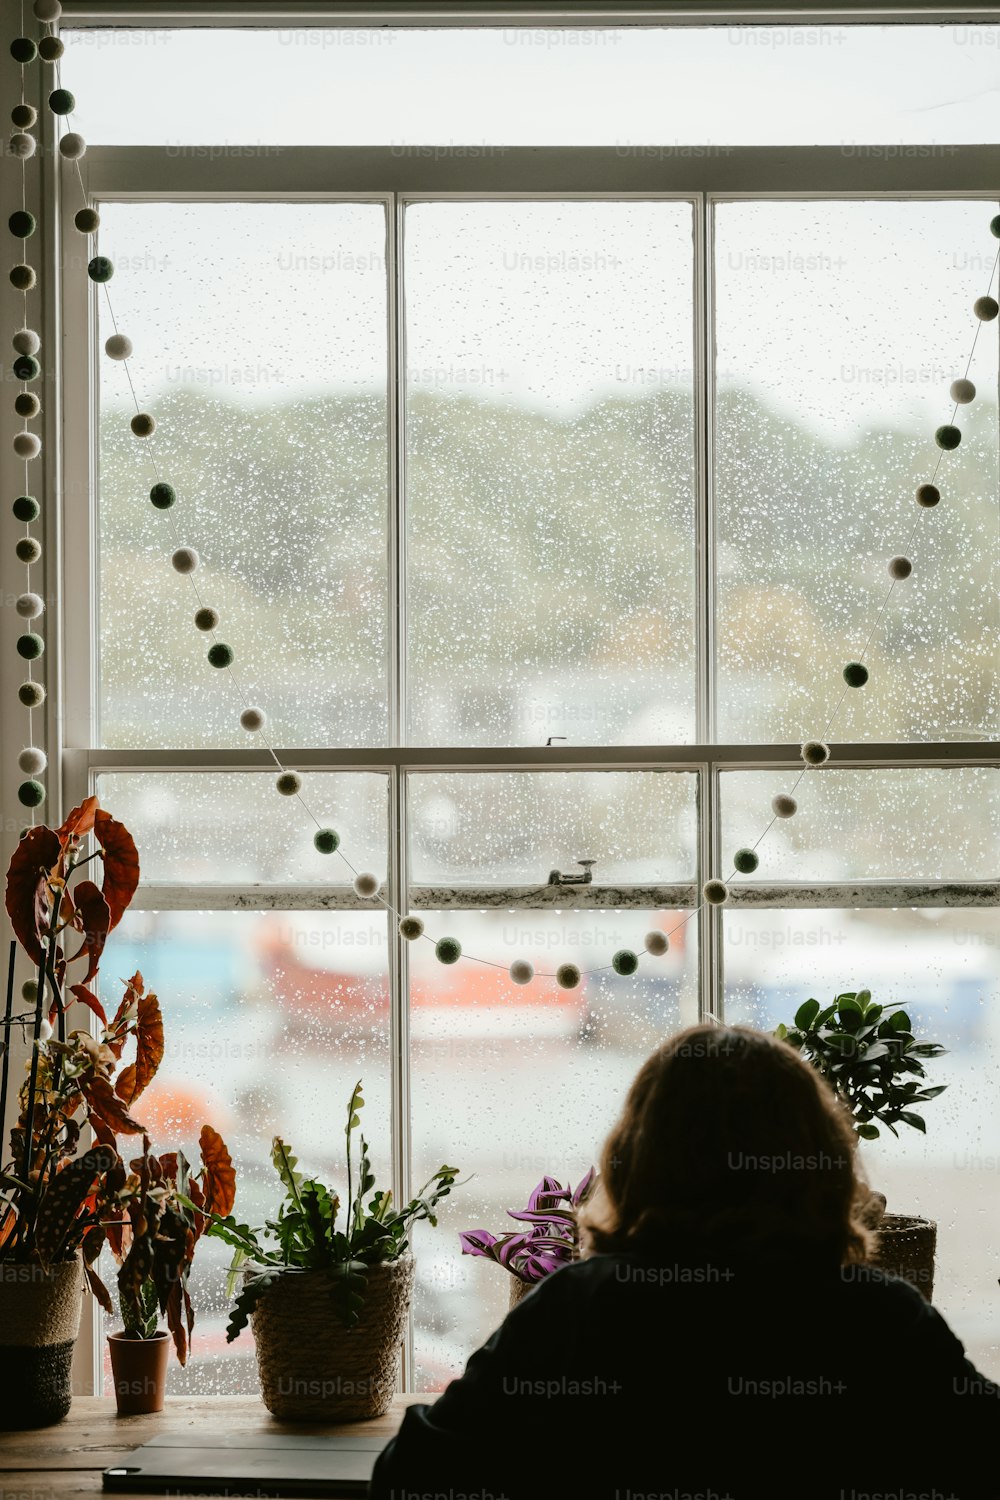 Una mujer sentada frente a una ventana junto a una planta en maceta